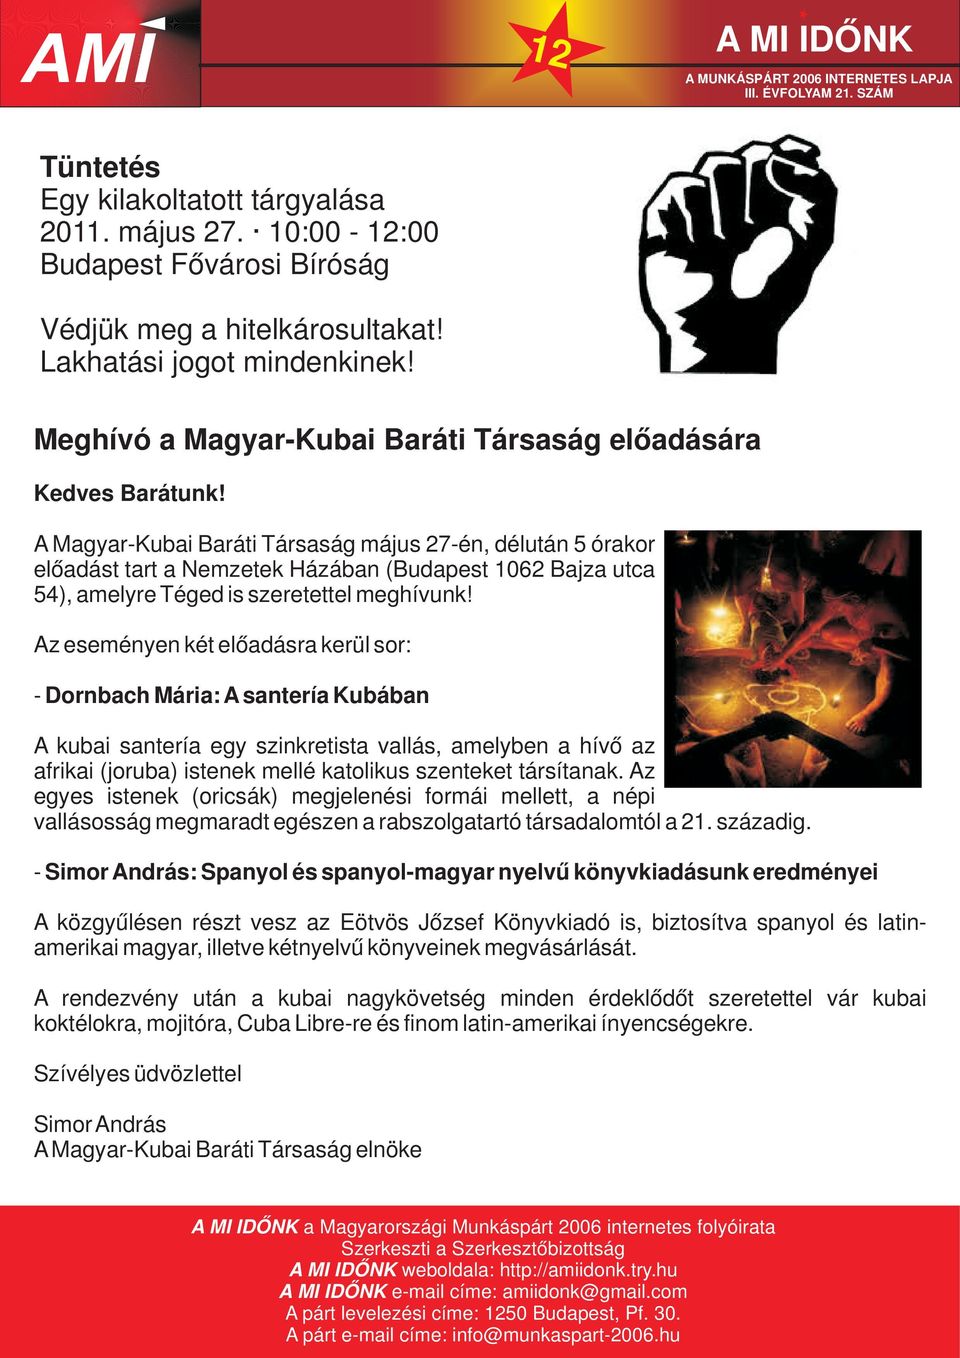 A Magyar-Kubai Baráti Társaság május 27-én, délután 5 órakor előadást tart a Nemzetek Házában (Budapest 1062 Bajza utca 54), amelyre Téged is szeretettel meghívunk!